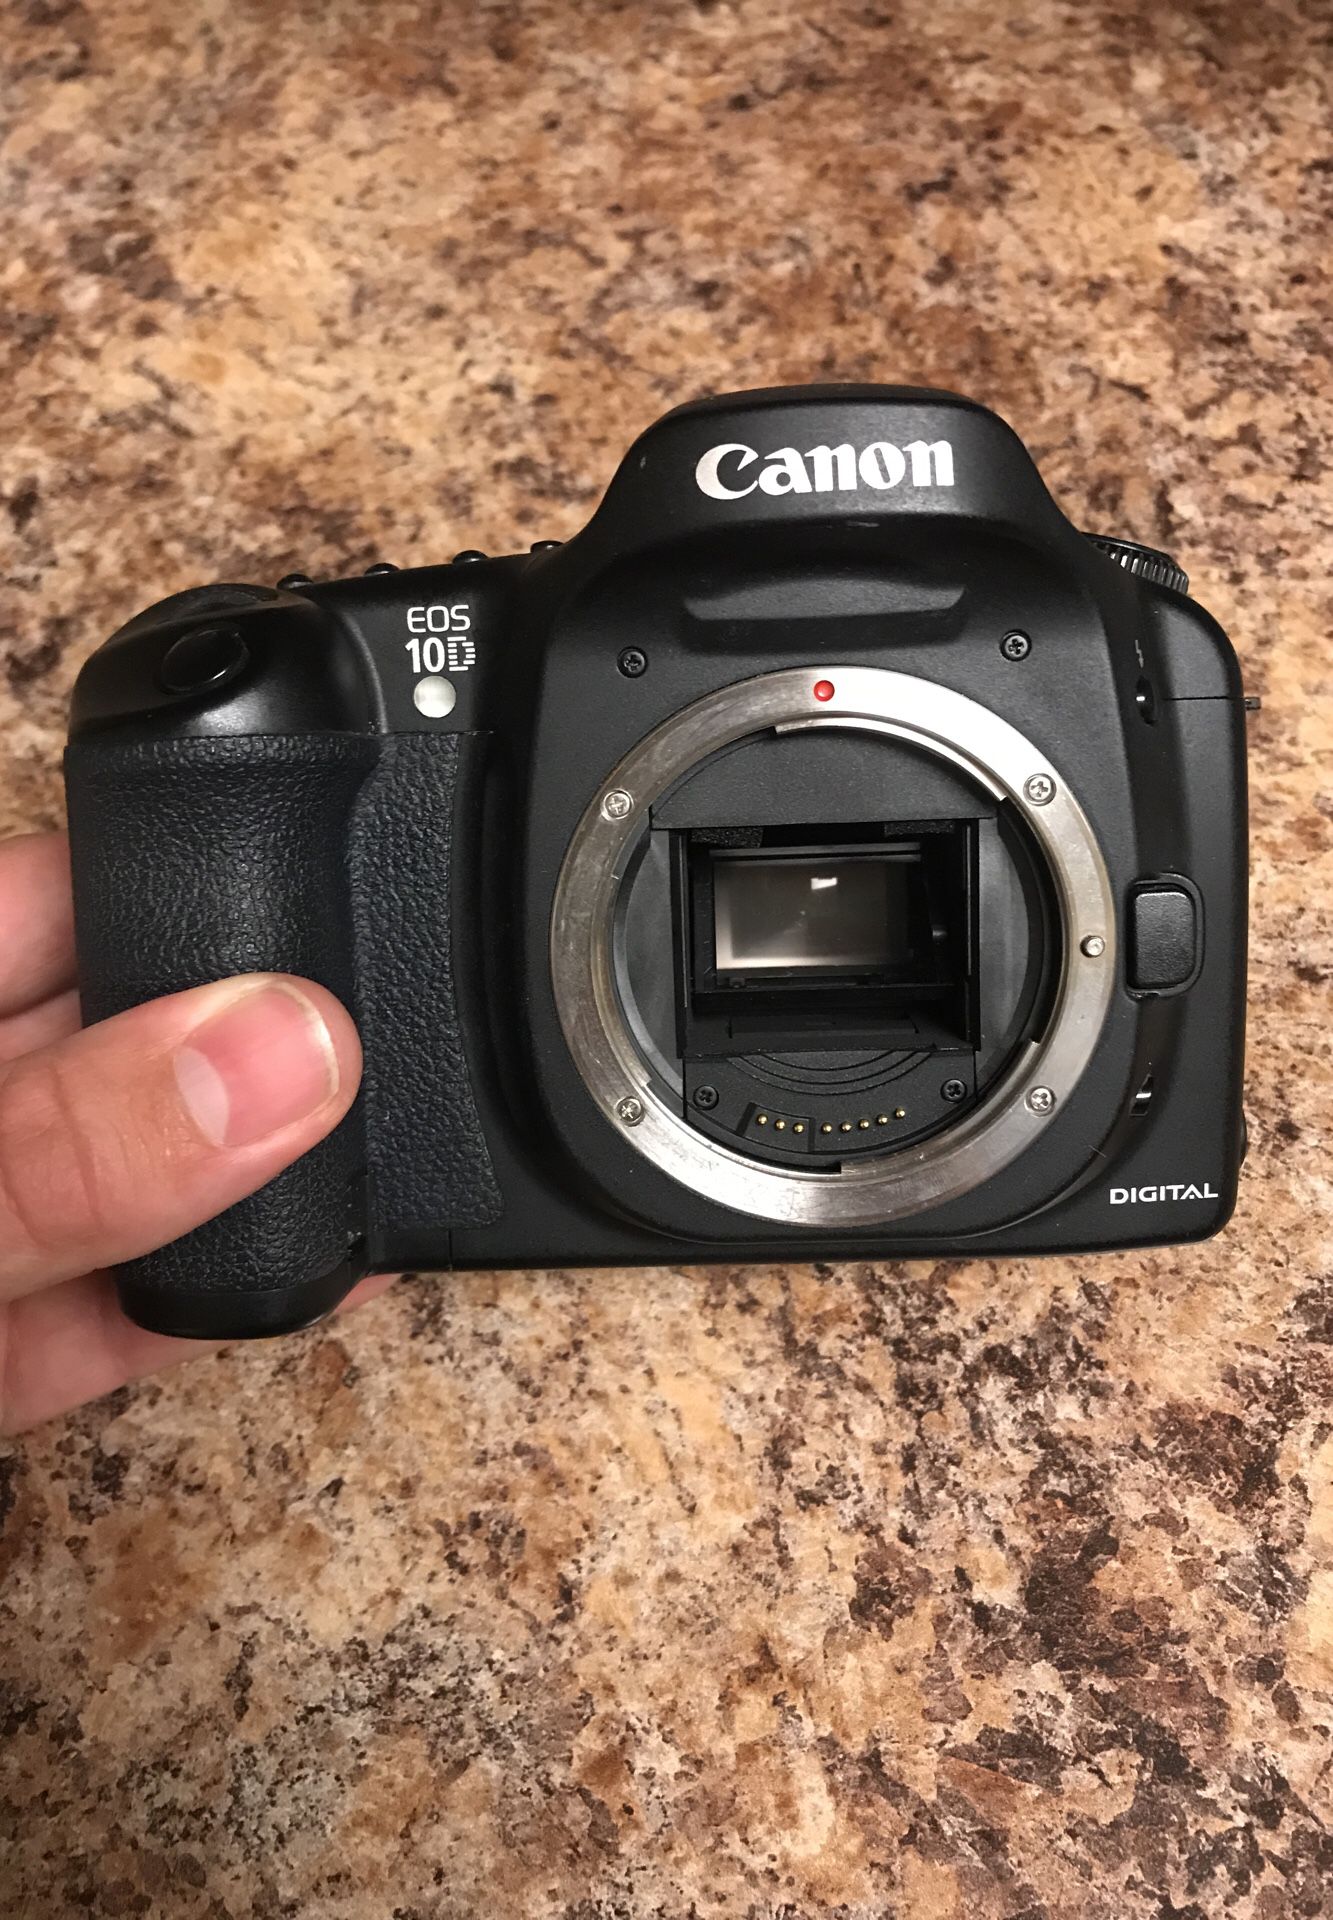 Canon 10D & Accessories